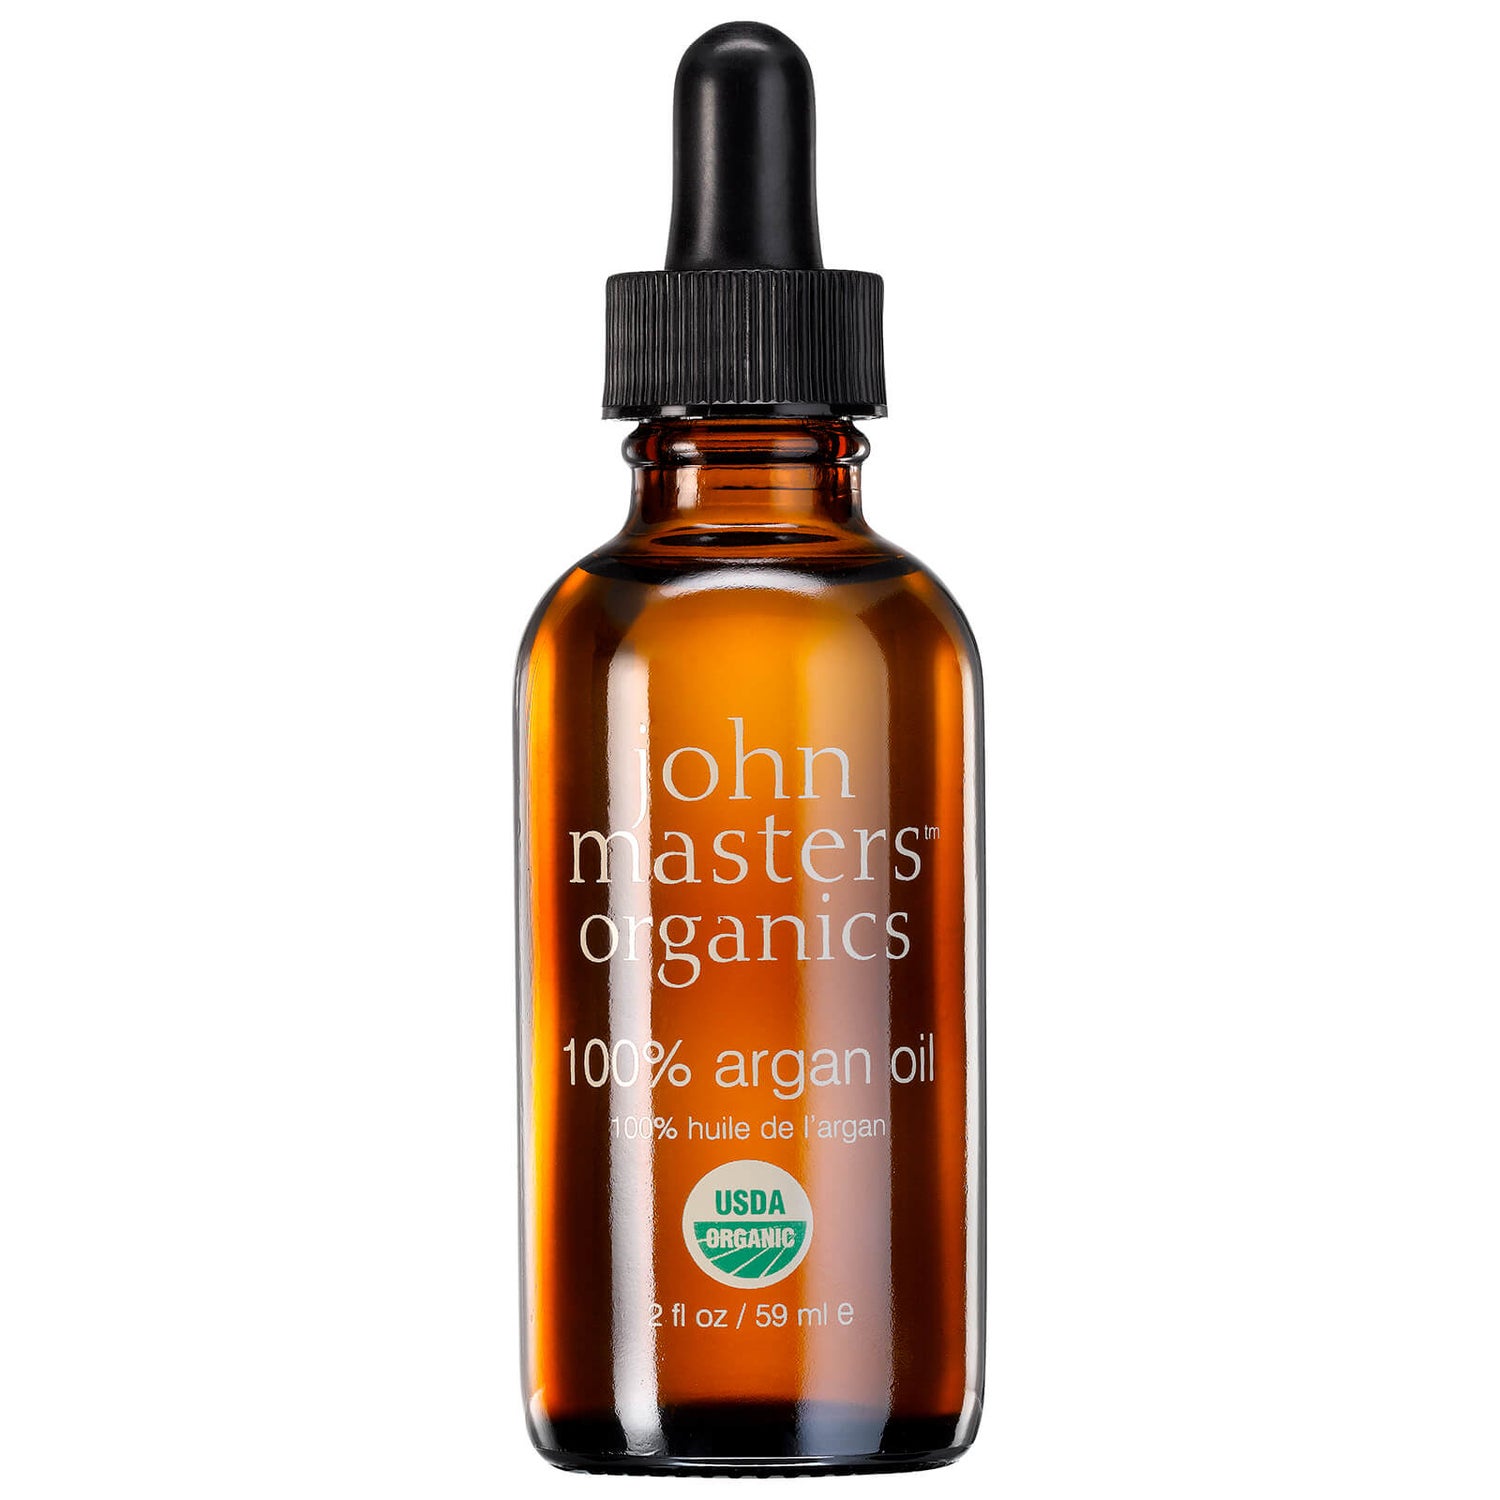 John Masters Organics 100% Argan Oil (59ml)